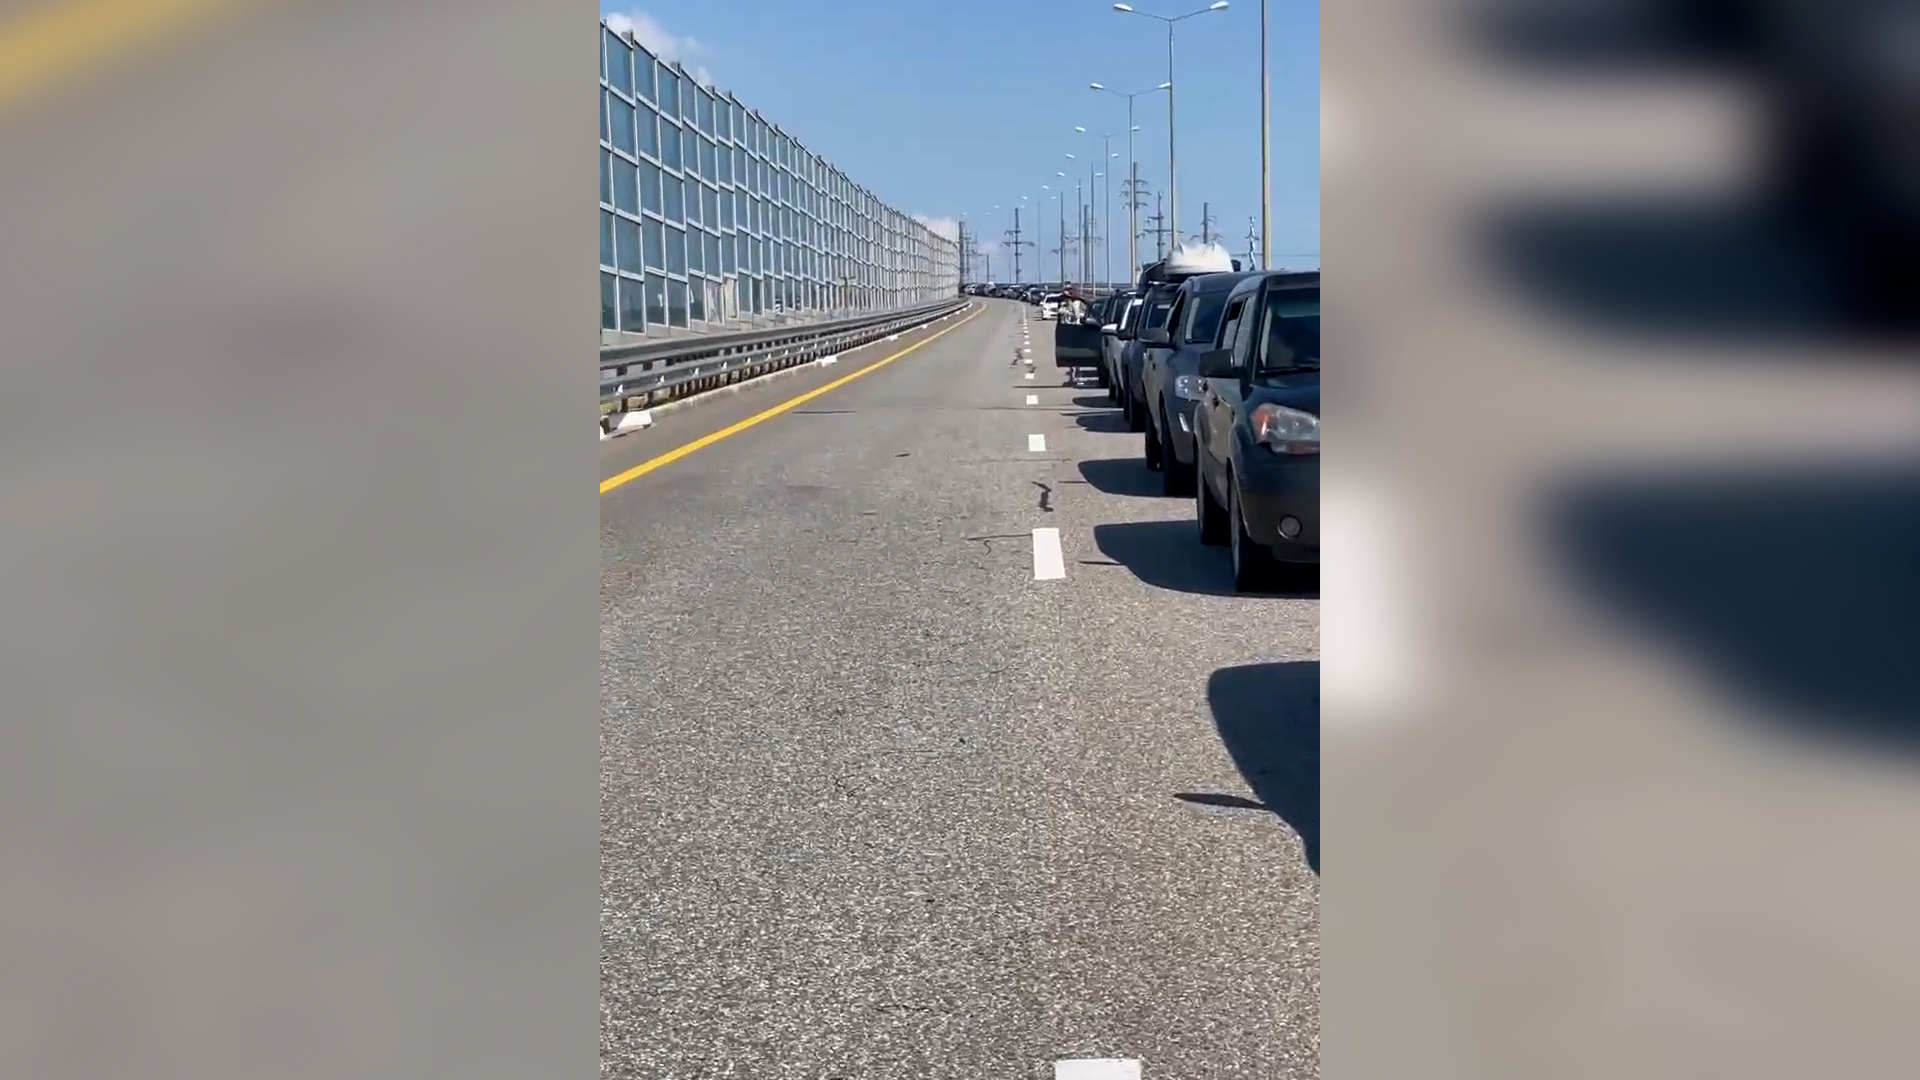 Ουρά χιλιομέτρων από οχήματα Ρώσων παραθεριστών που πηγαίνουν για διακοπές στην Κριμαία